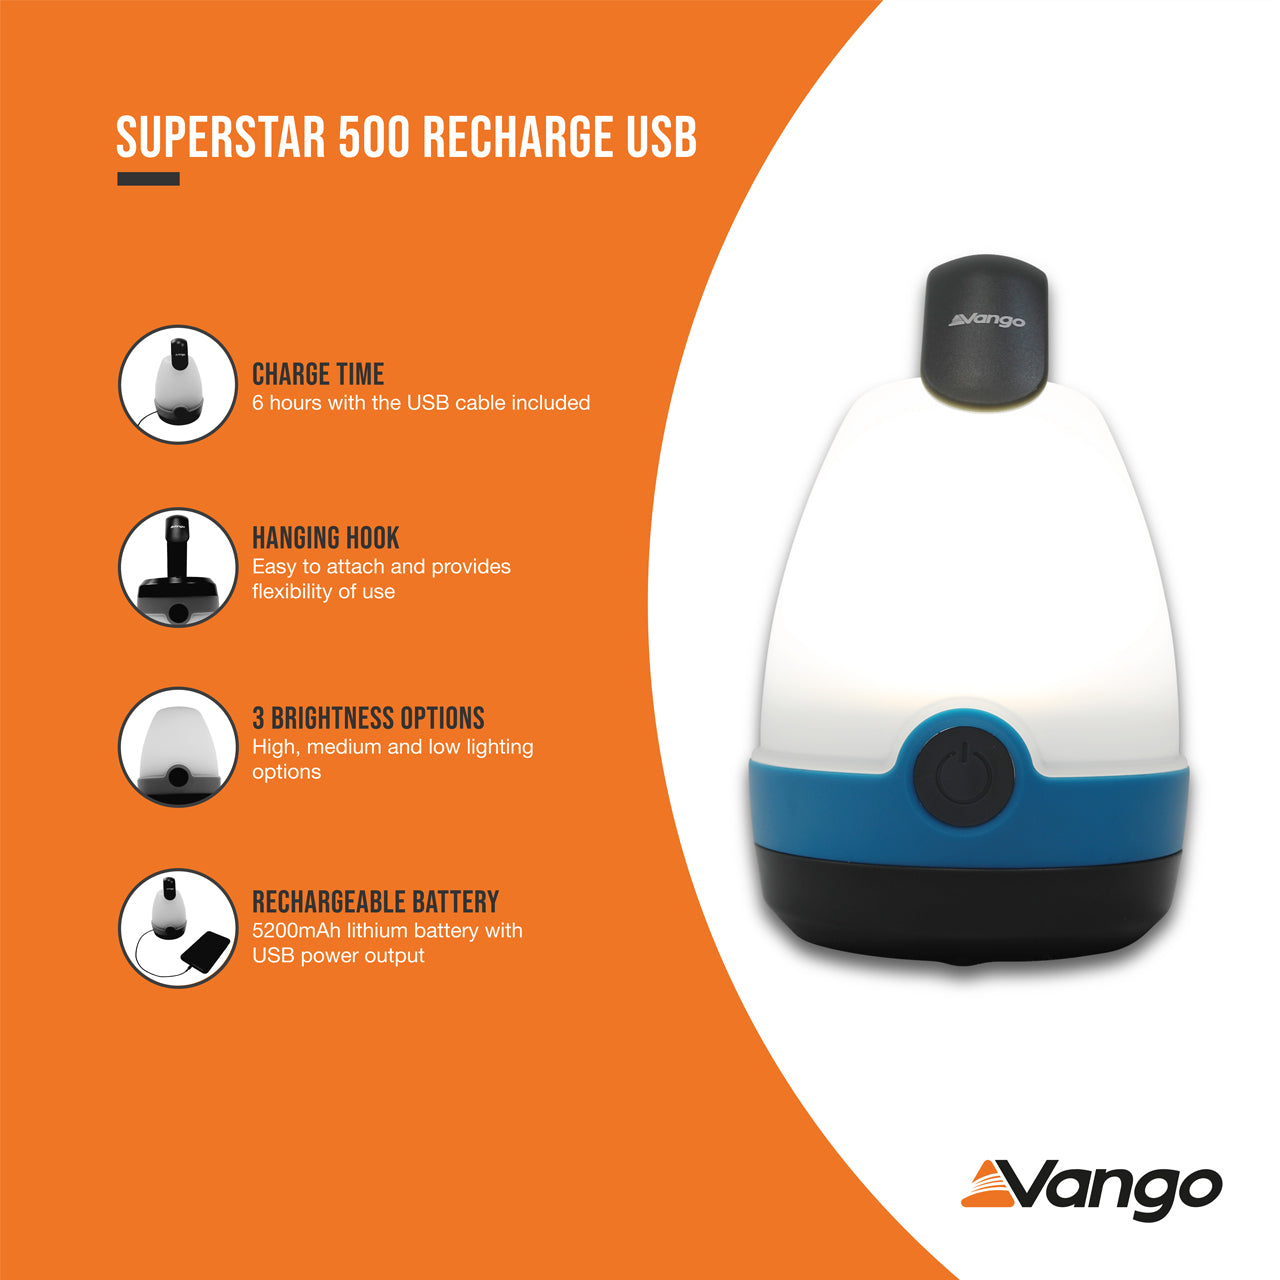 Vango Superstar 500 USB Rechargeable Lantern